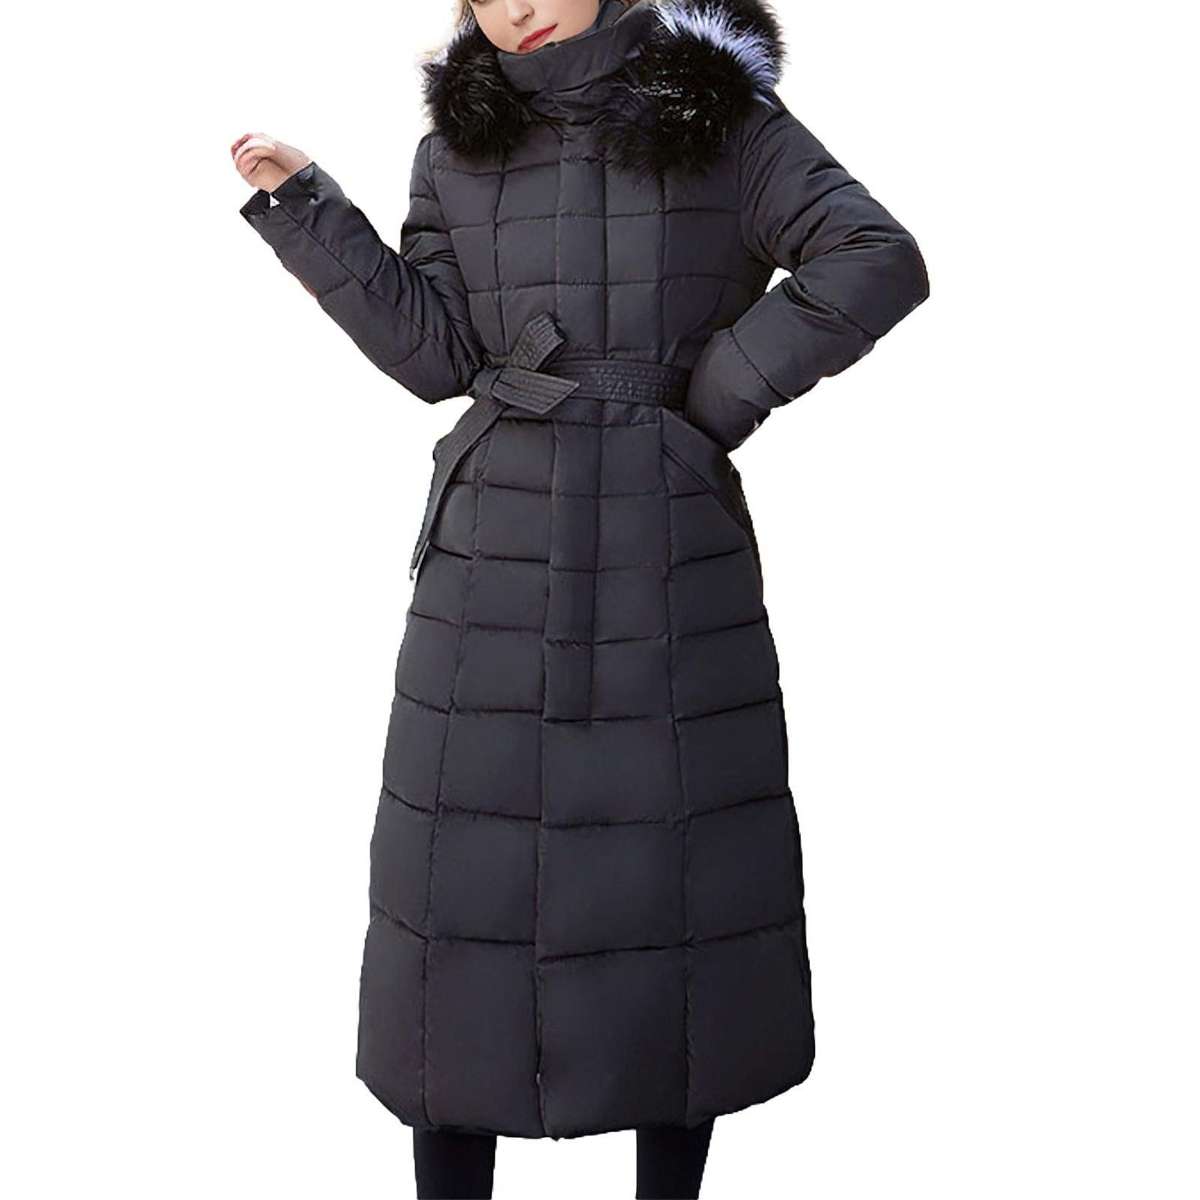 Зимнее пальто Легкая куртка с капюшоном Термопальто с капюшоном и поясом